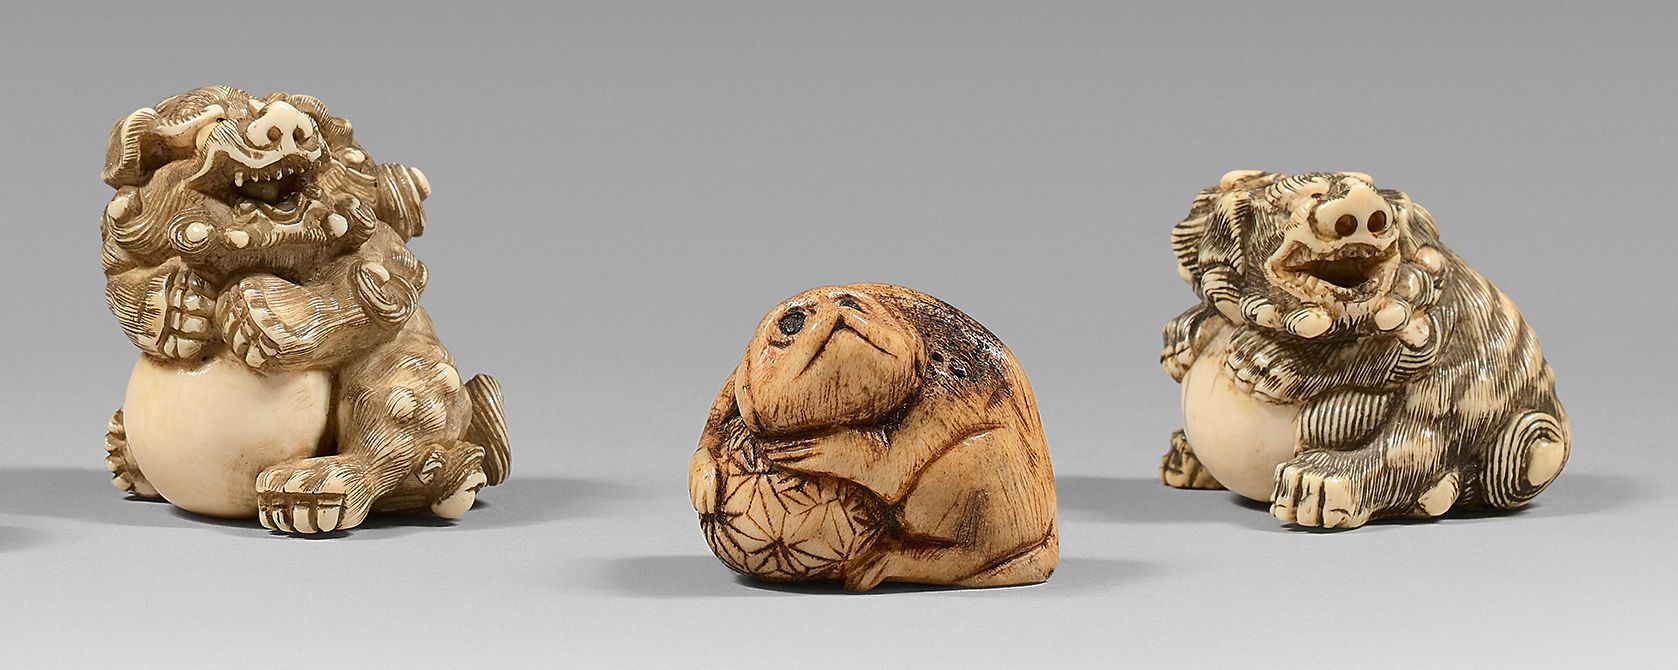 JAPON - Époque EDO (1603-1868) Tres netsuke, dos de marfil que representan a un &hellip;